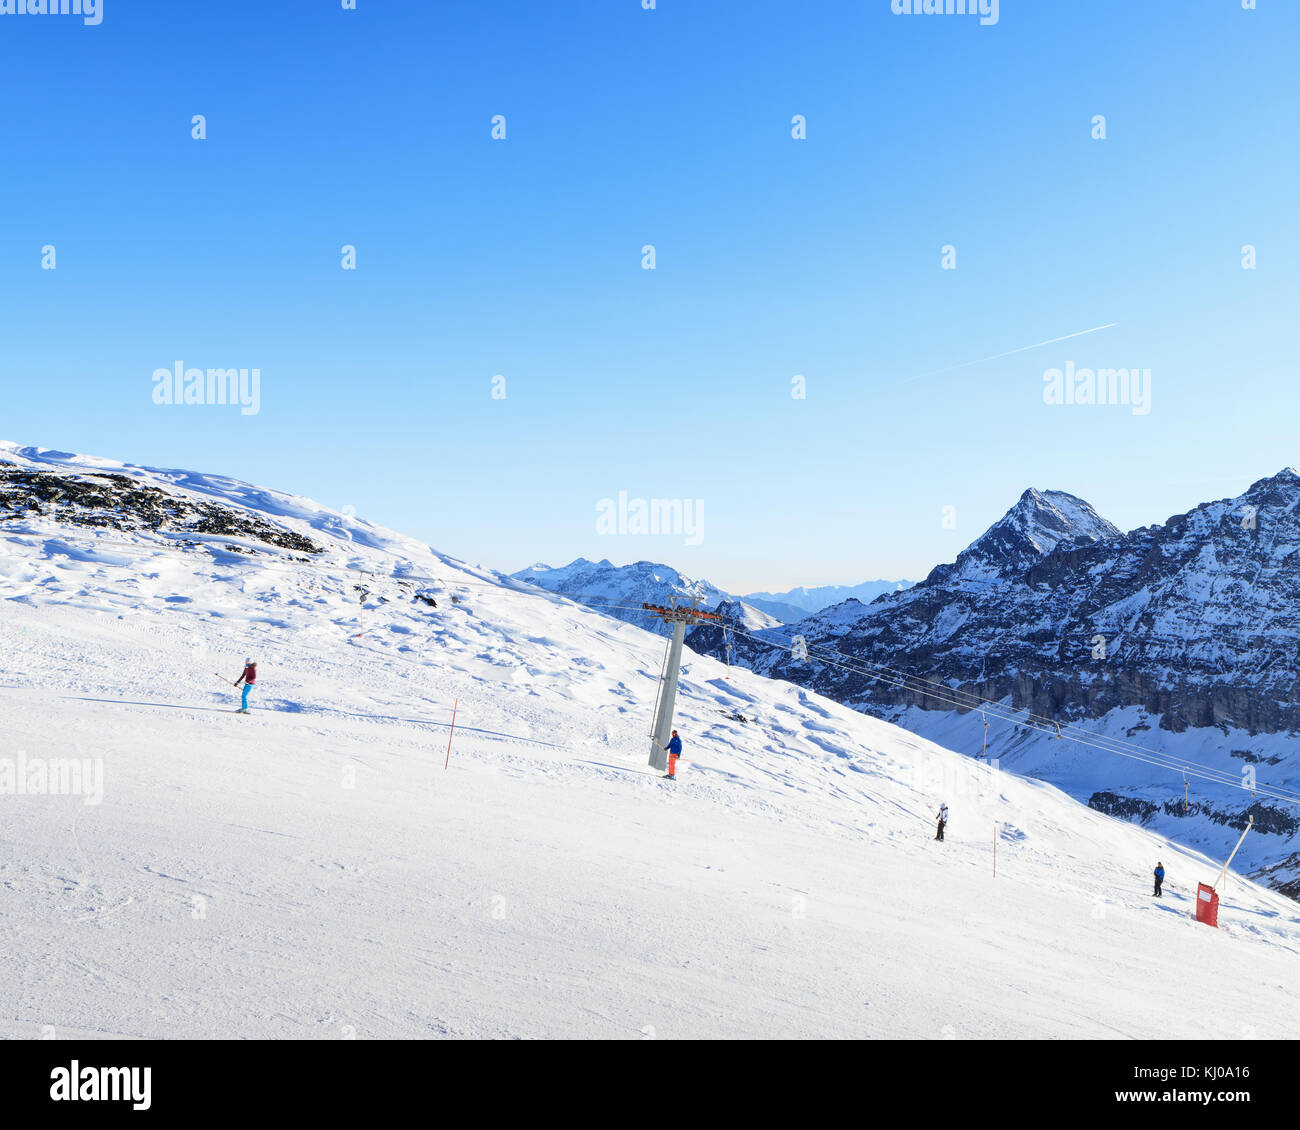 Winter skiing resort in Alps Stock Photo